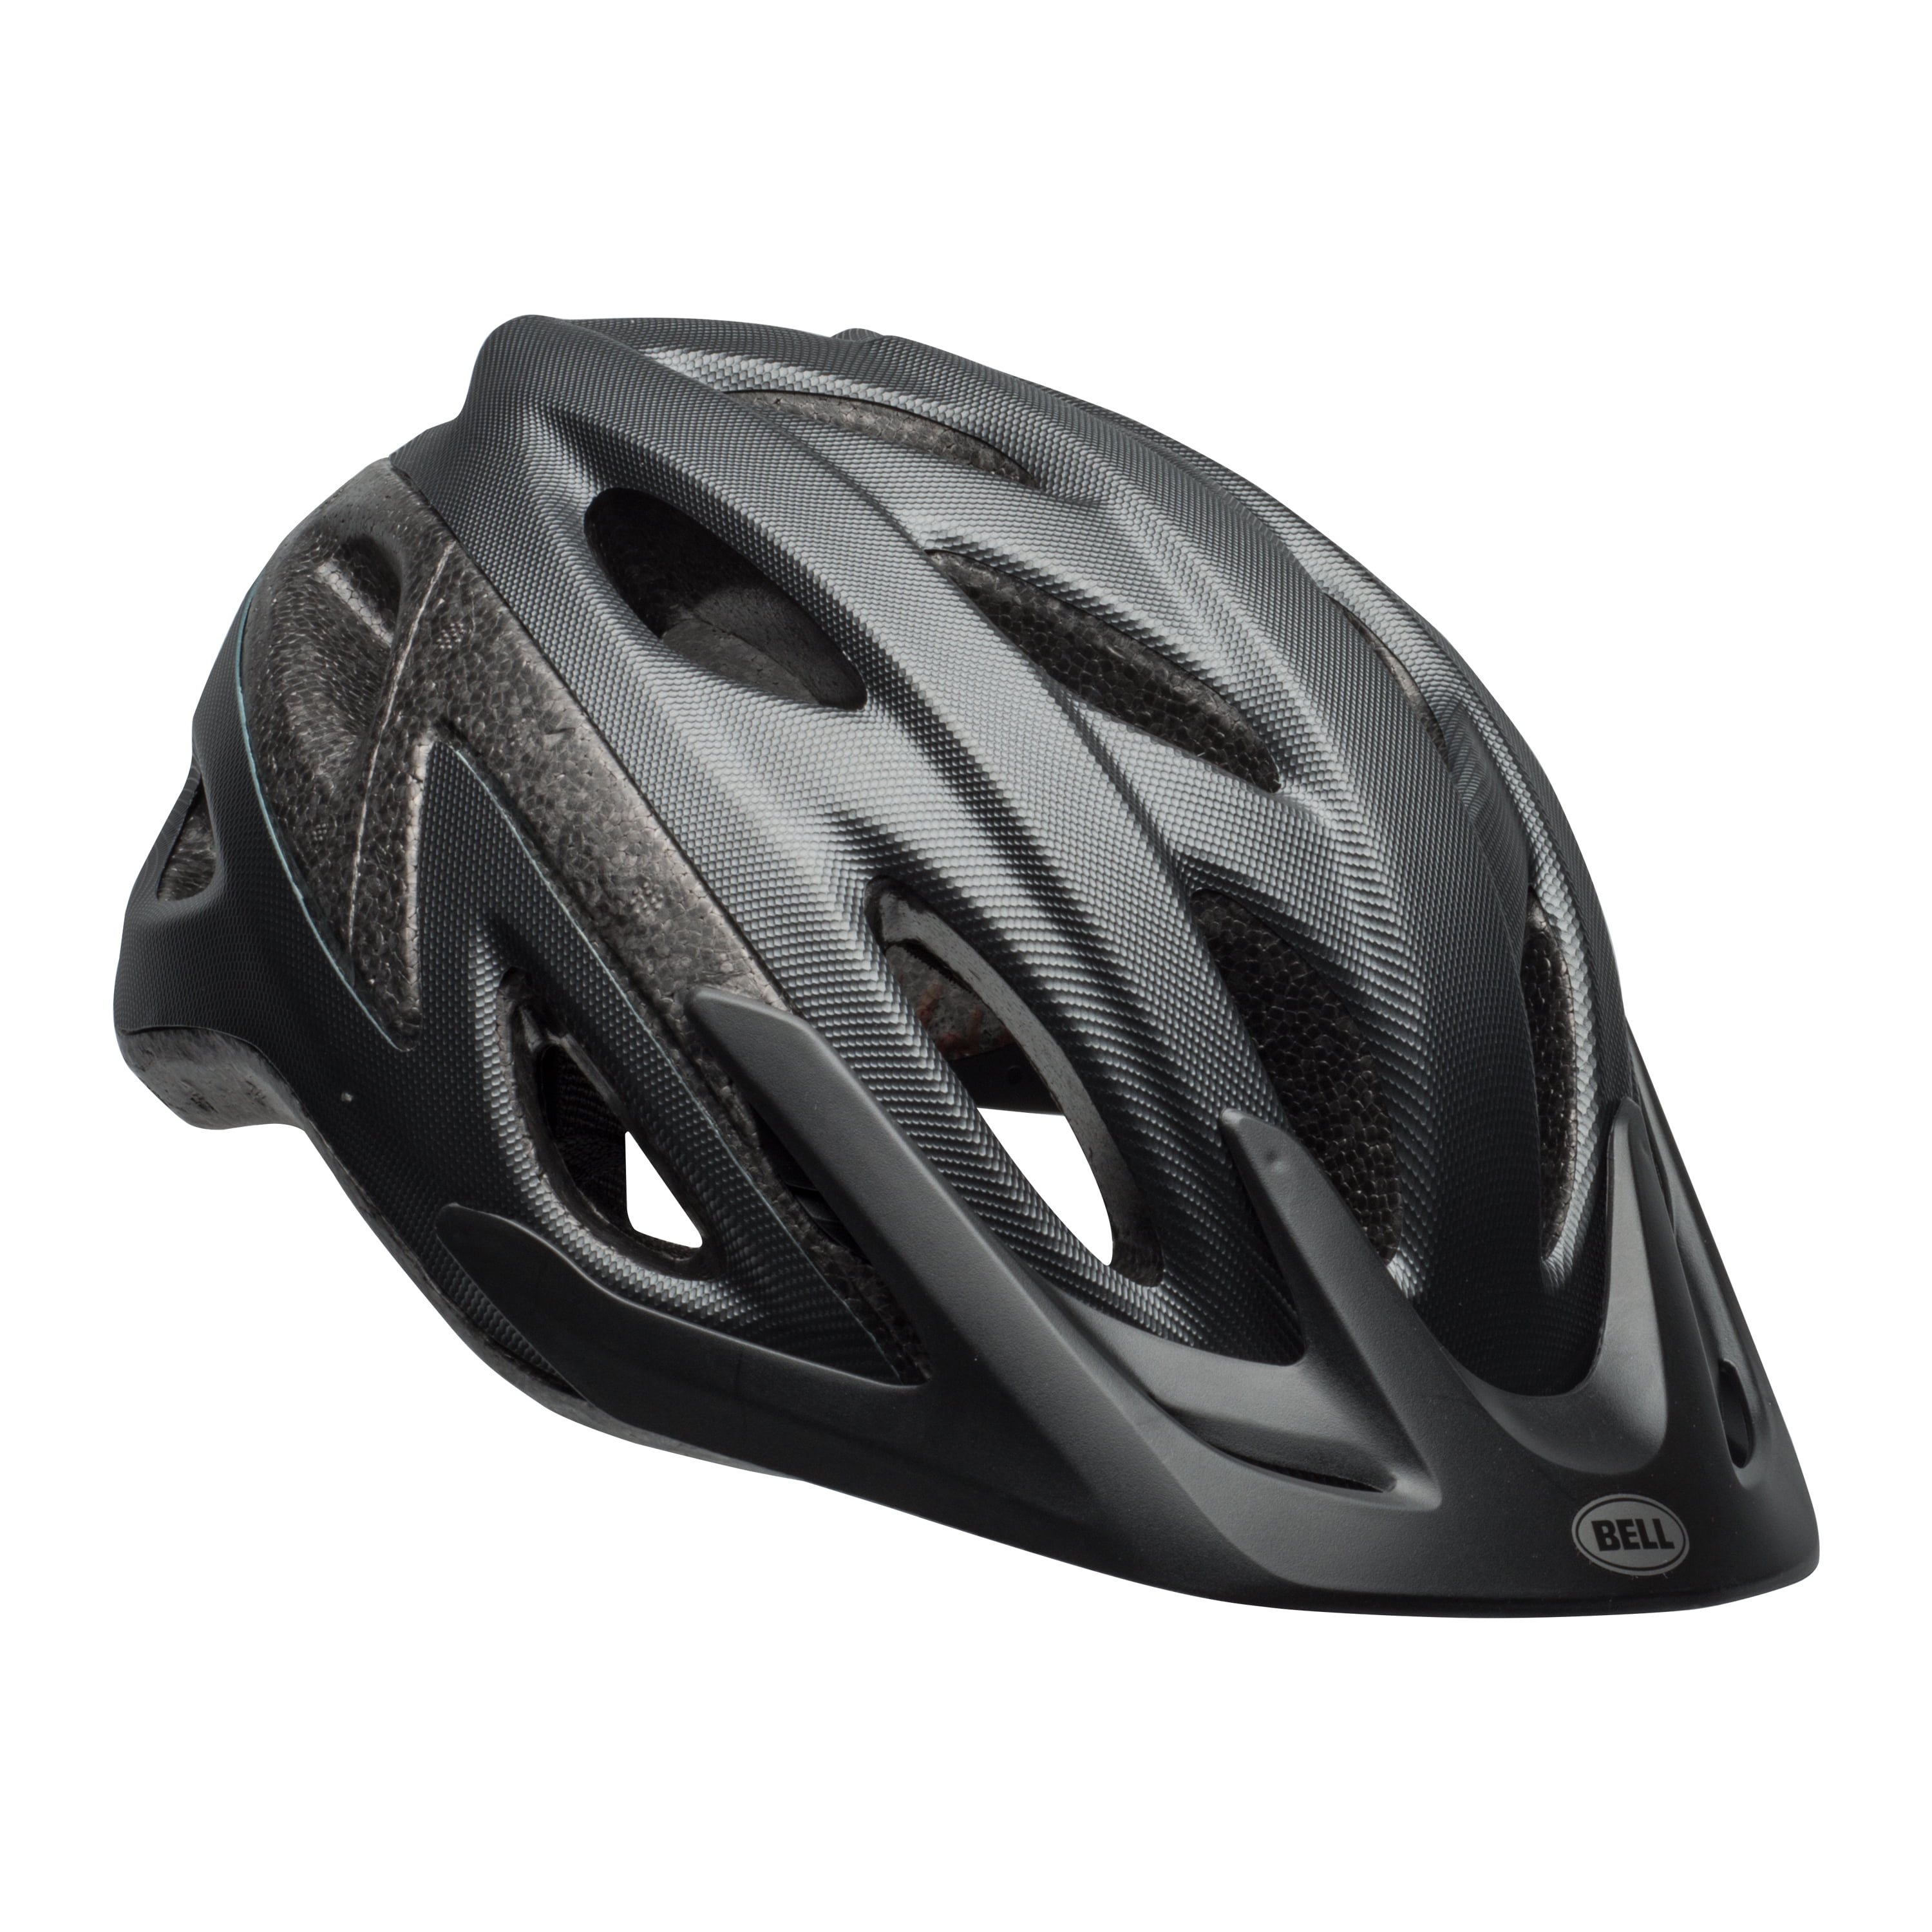 L for sale online Bell Radar M135X Protective Helmet Bike Skateboard Rollerblade Adult Size M 